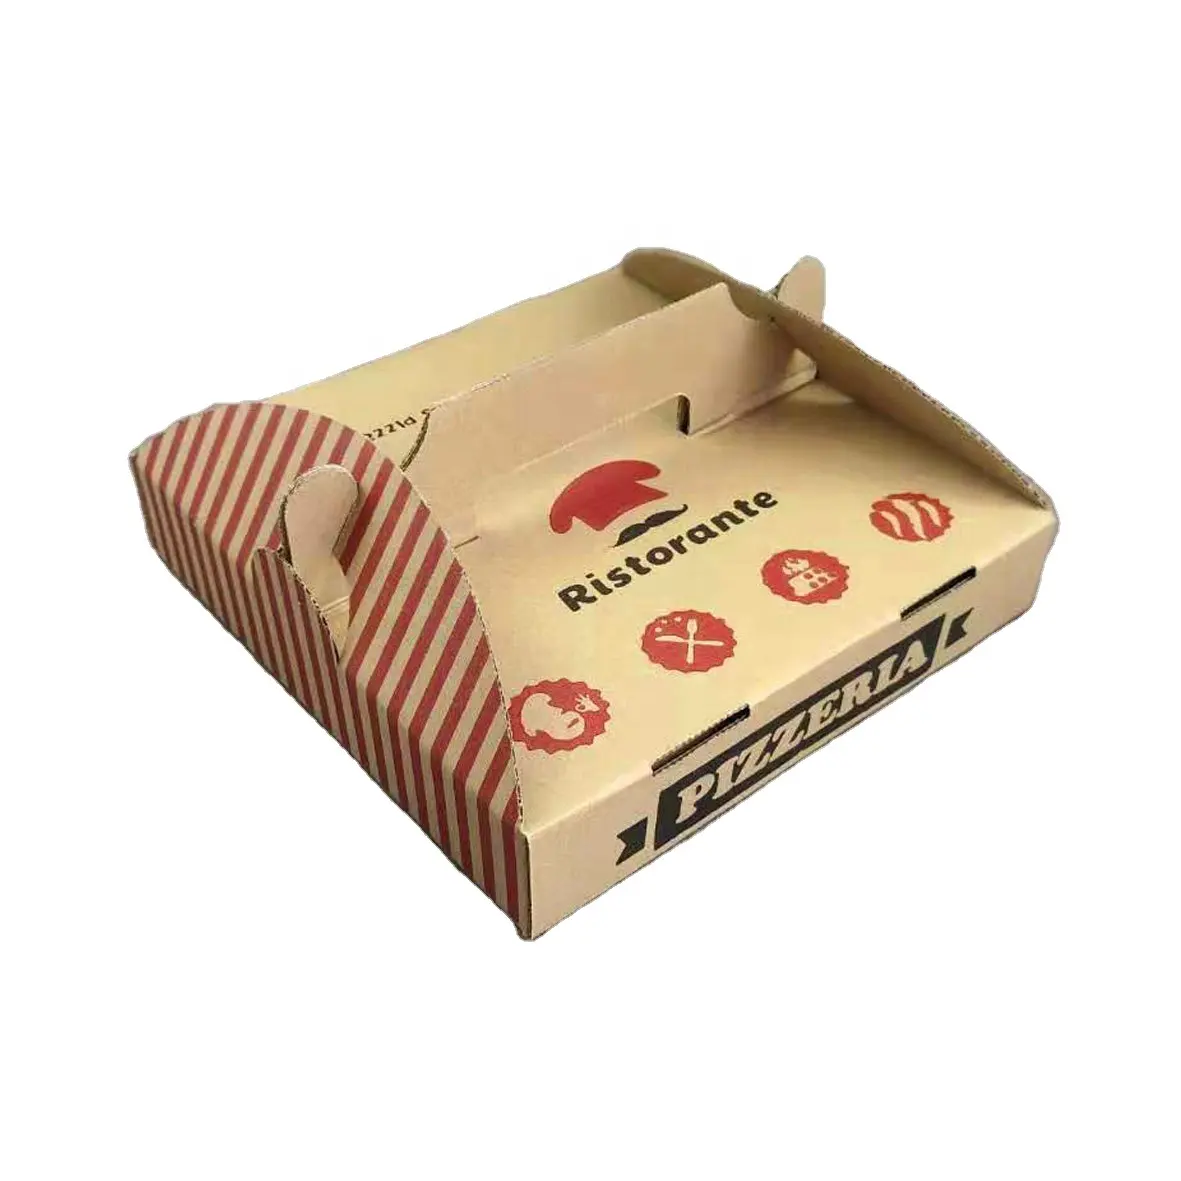 Товар amazons, лидер продаж, онлайн, Прямая поставка, электронная коммерция, общий дизайн упаковки, ваш собственный персонализированный ящик для пиццы